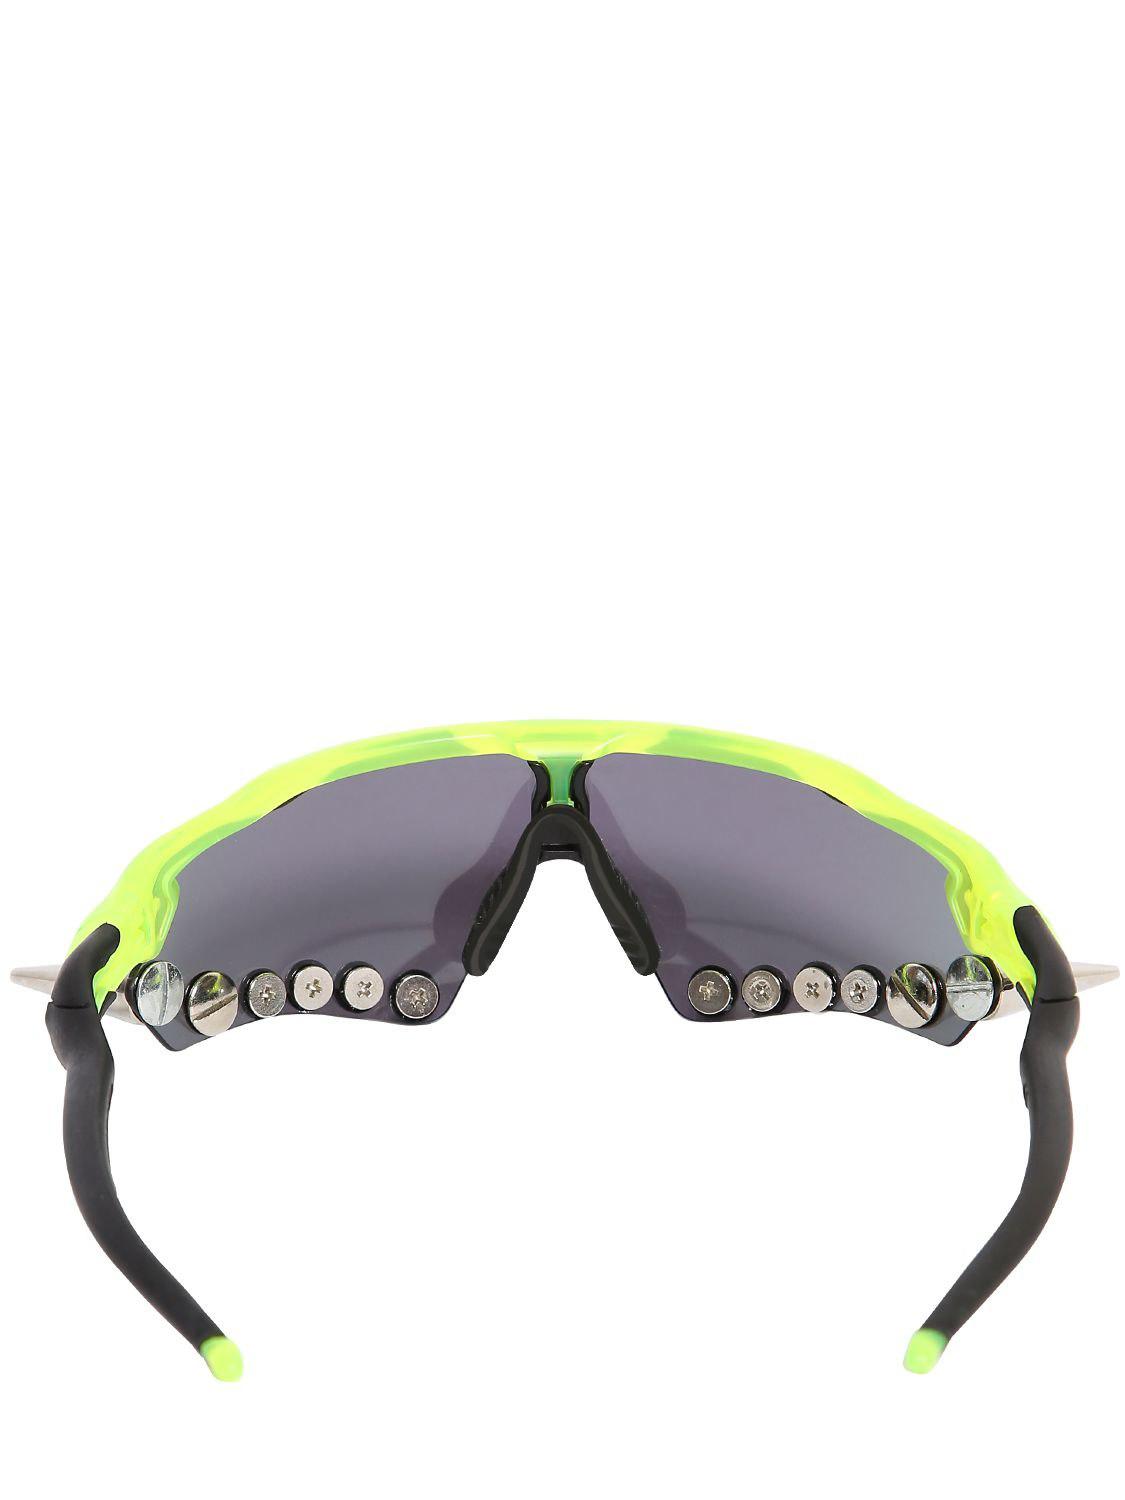 Vetements Oakley 400 Spikes Sunglasses in Blue/Green (Green) | Lyst